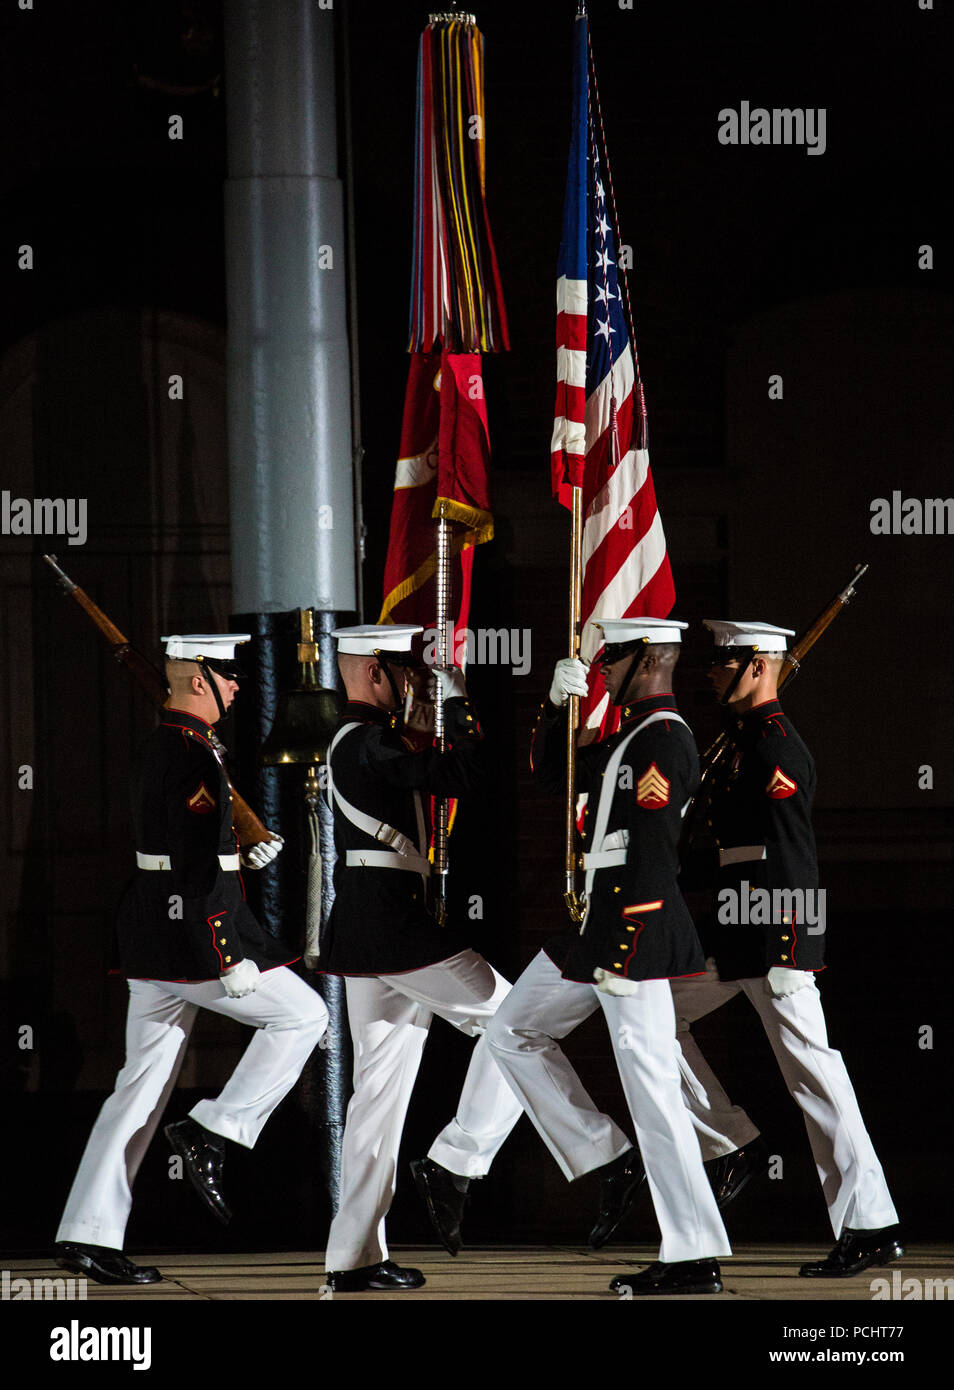 Marines mit dem US Marine Corps Color Guard Ausführen einer "counter März" während der Staff-Noncommissioned Officer Freitag Abend Parade bei Marine Barracks Washington D.C., 27. Juli 2018. Während der NATURSCHUTZBEHÖRDE Freitag Abend Parade, NATURSCHUTZBEHÖRDE der Knüppel von wichtigen Führungskräften' marching Positionen in der Regel von den Offizieren und Unteroffizieren nicht übernehmen. Stockfoto